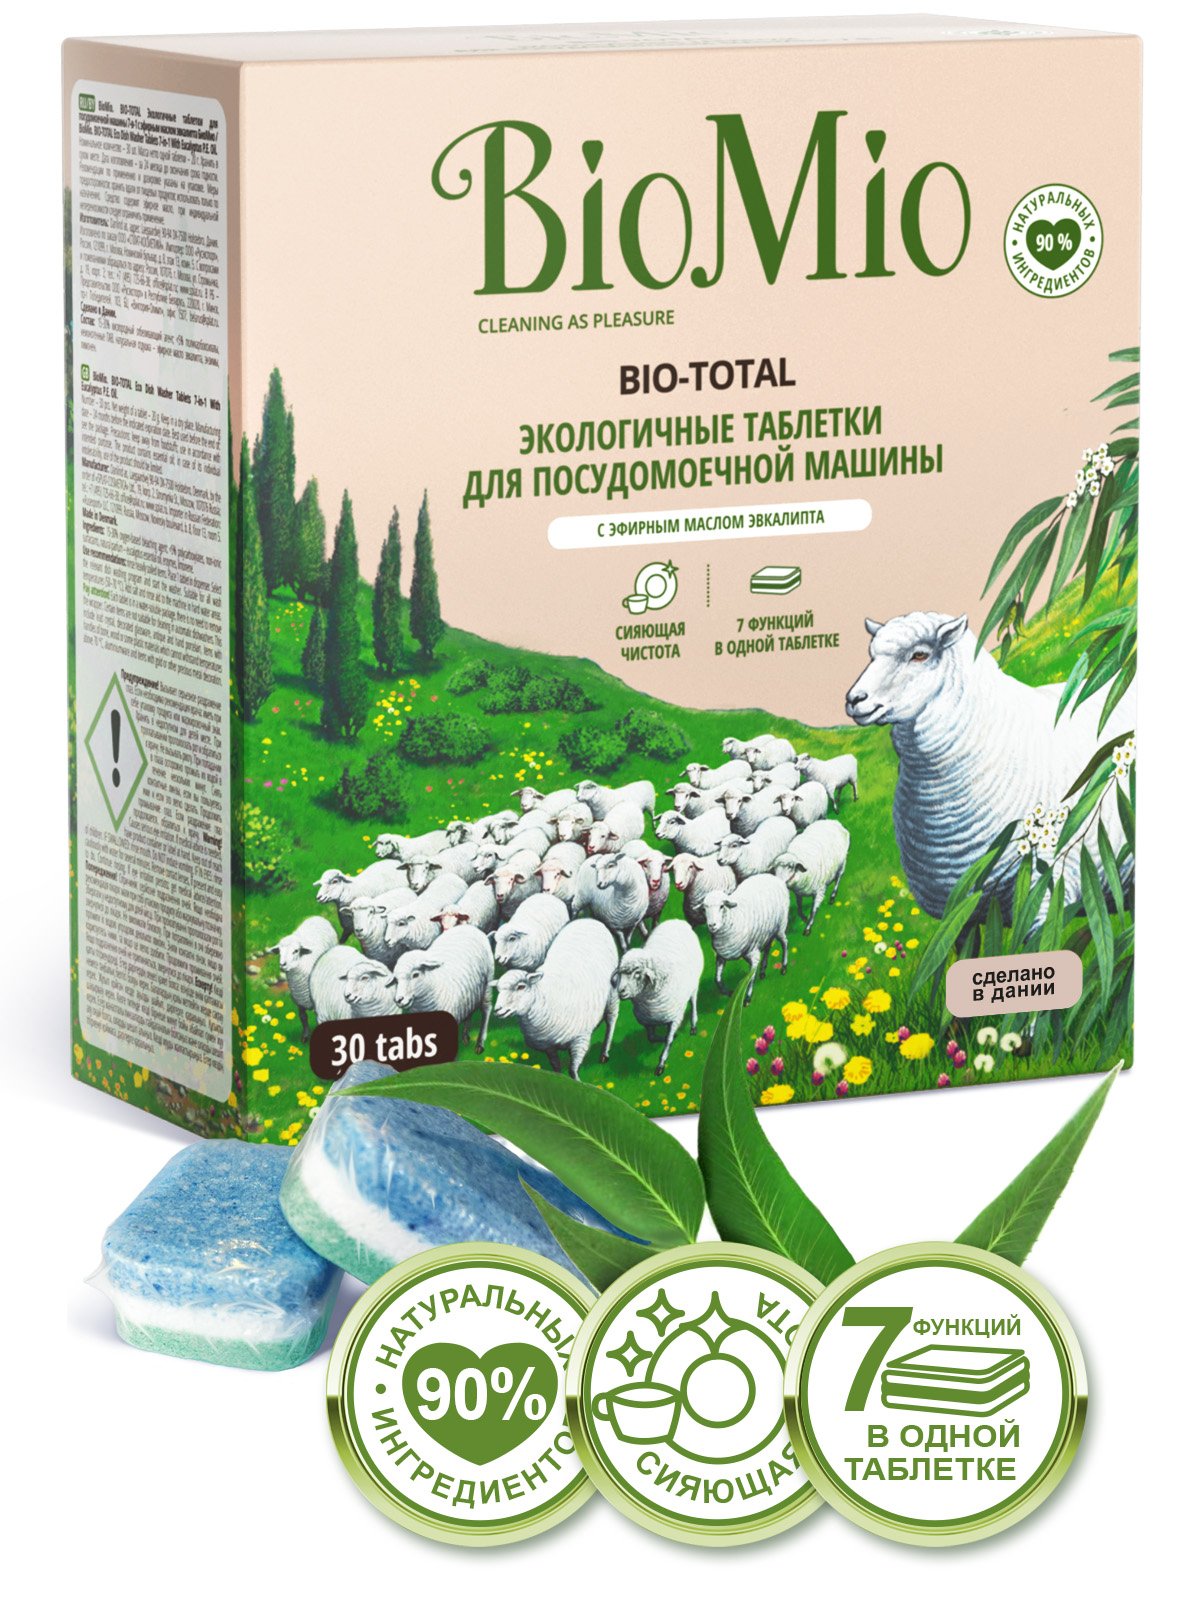 Таблетки для мытья посуды в посудомоечных машинах BioMio Bio-Total 7 в 1 с маслом эвкалипта, 30 шт. - фото 2